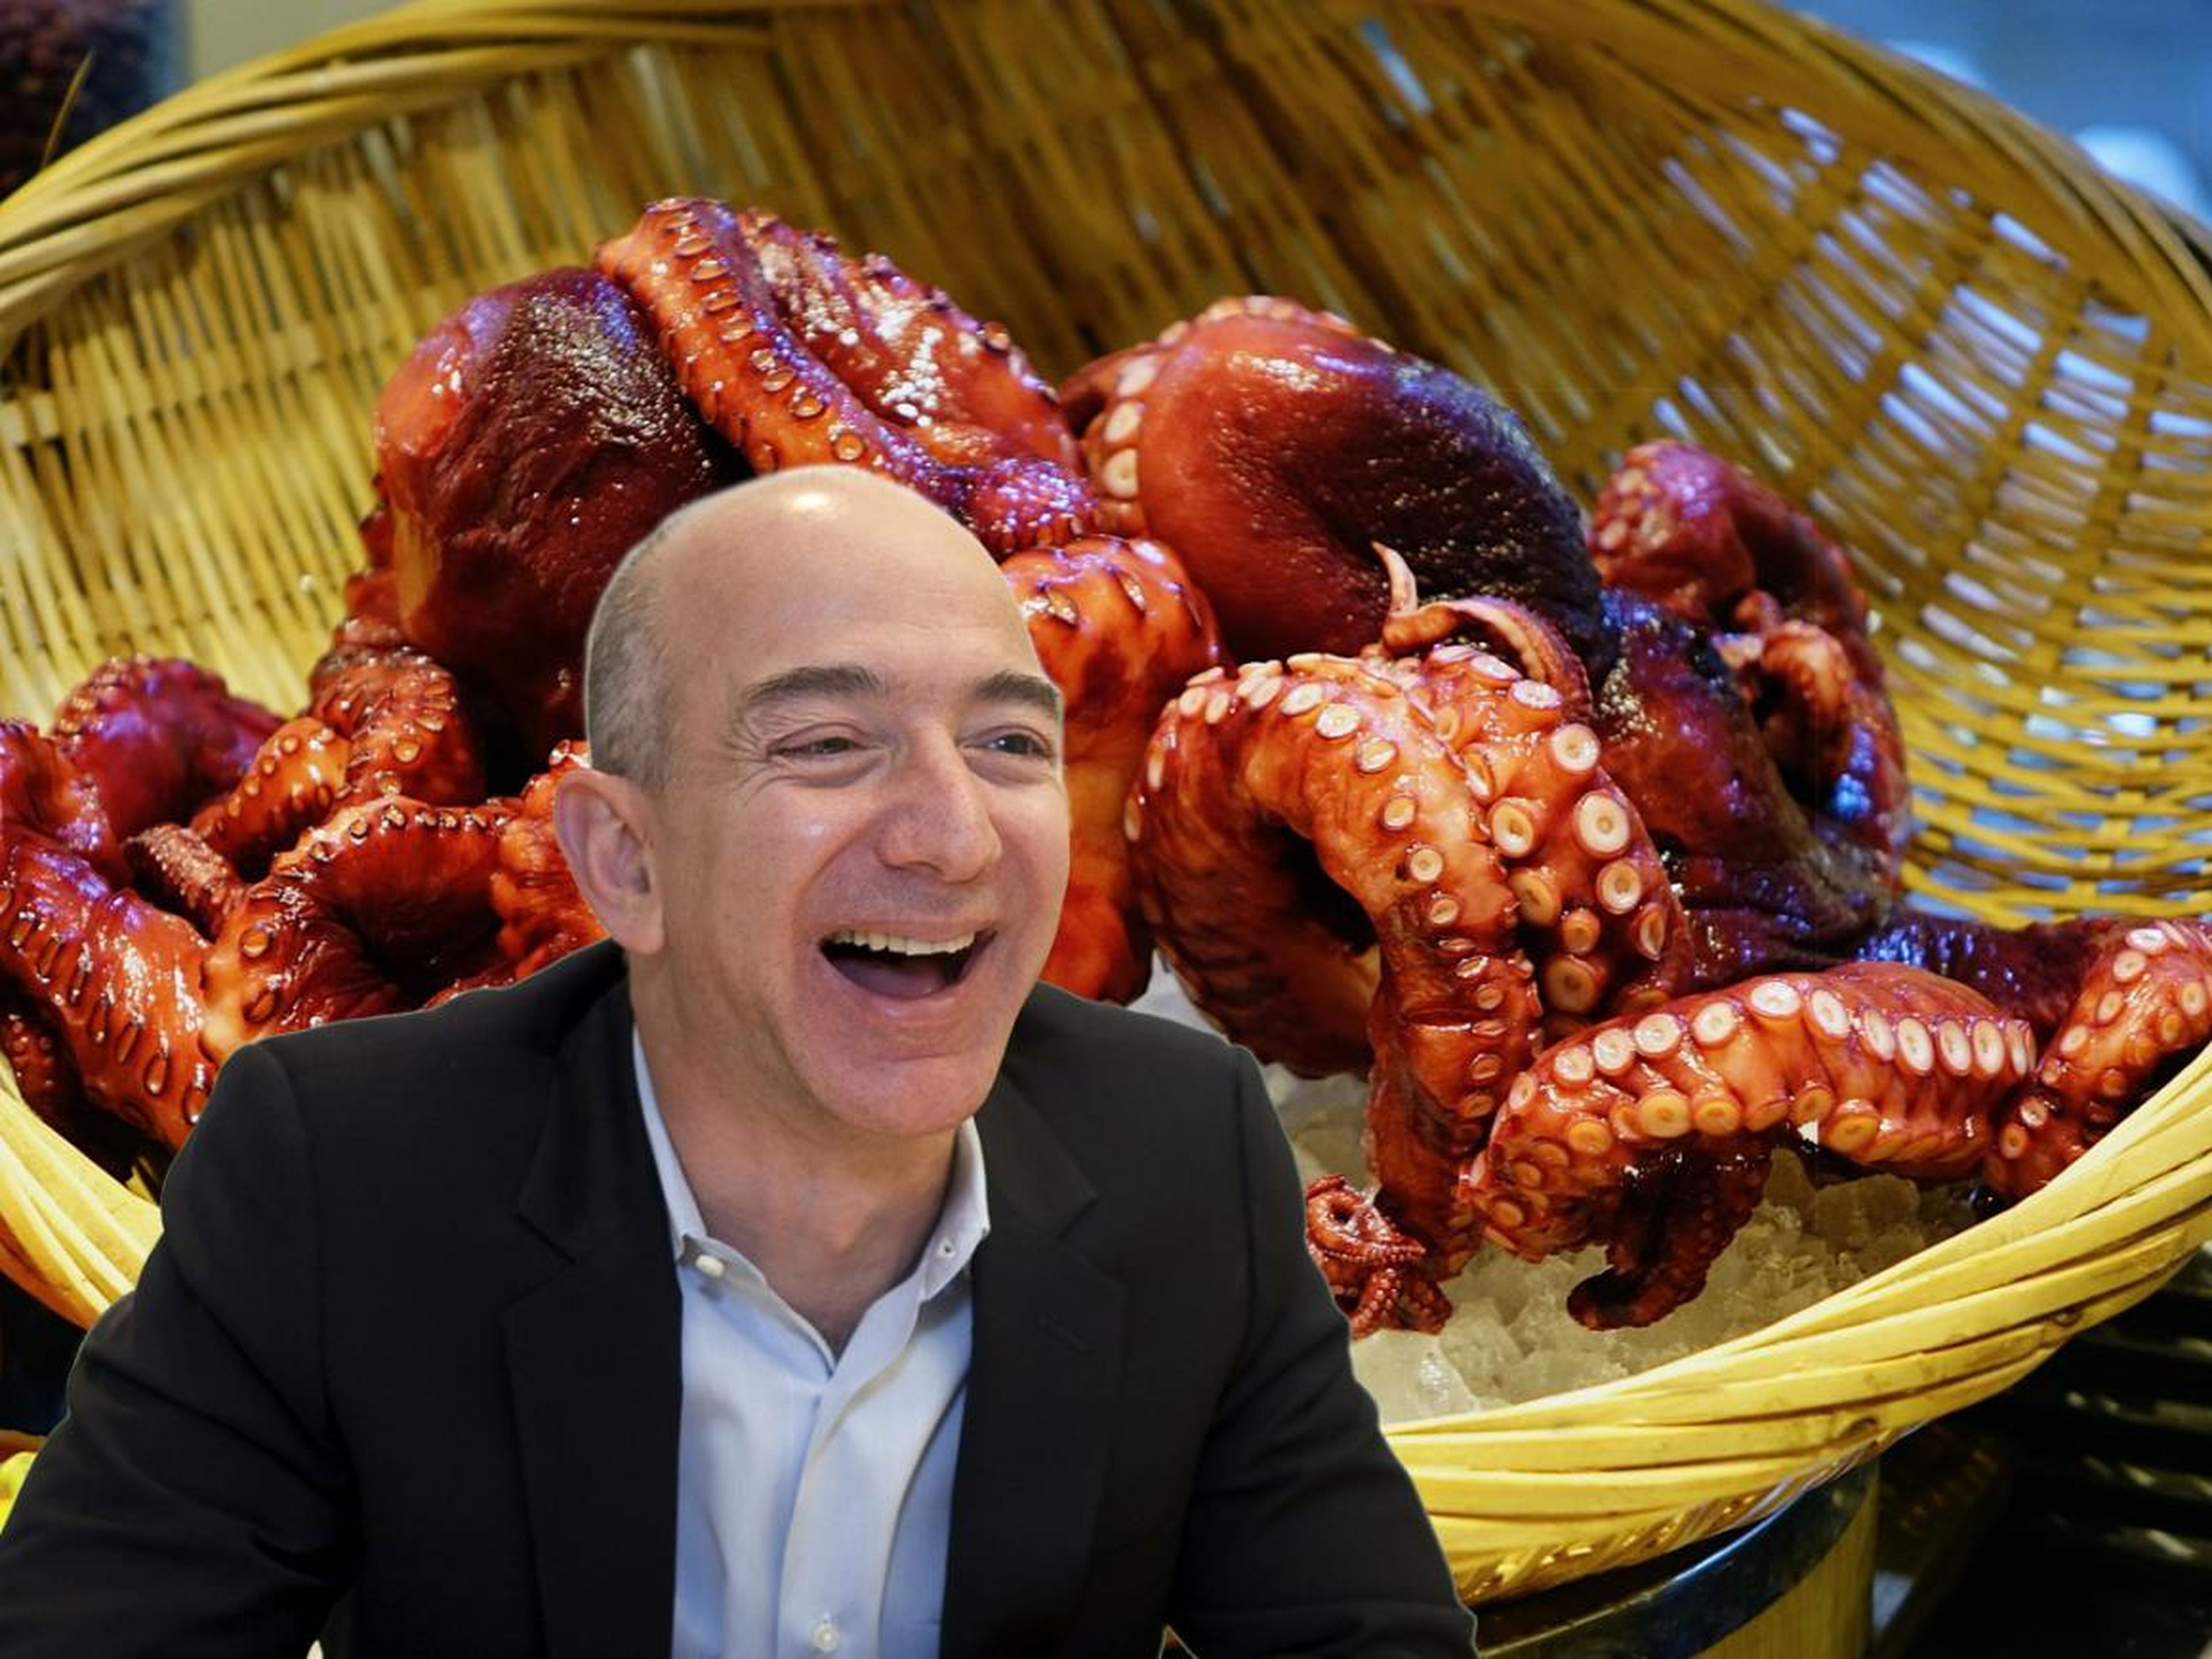 Jeff Bezos on a horse.